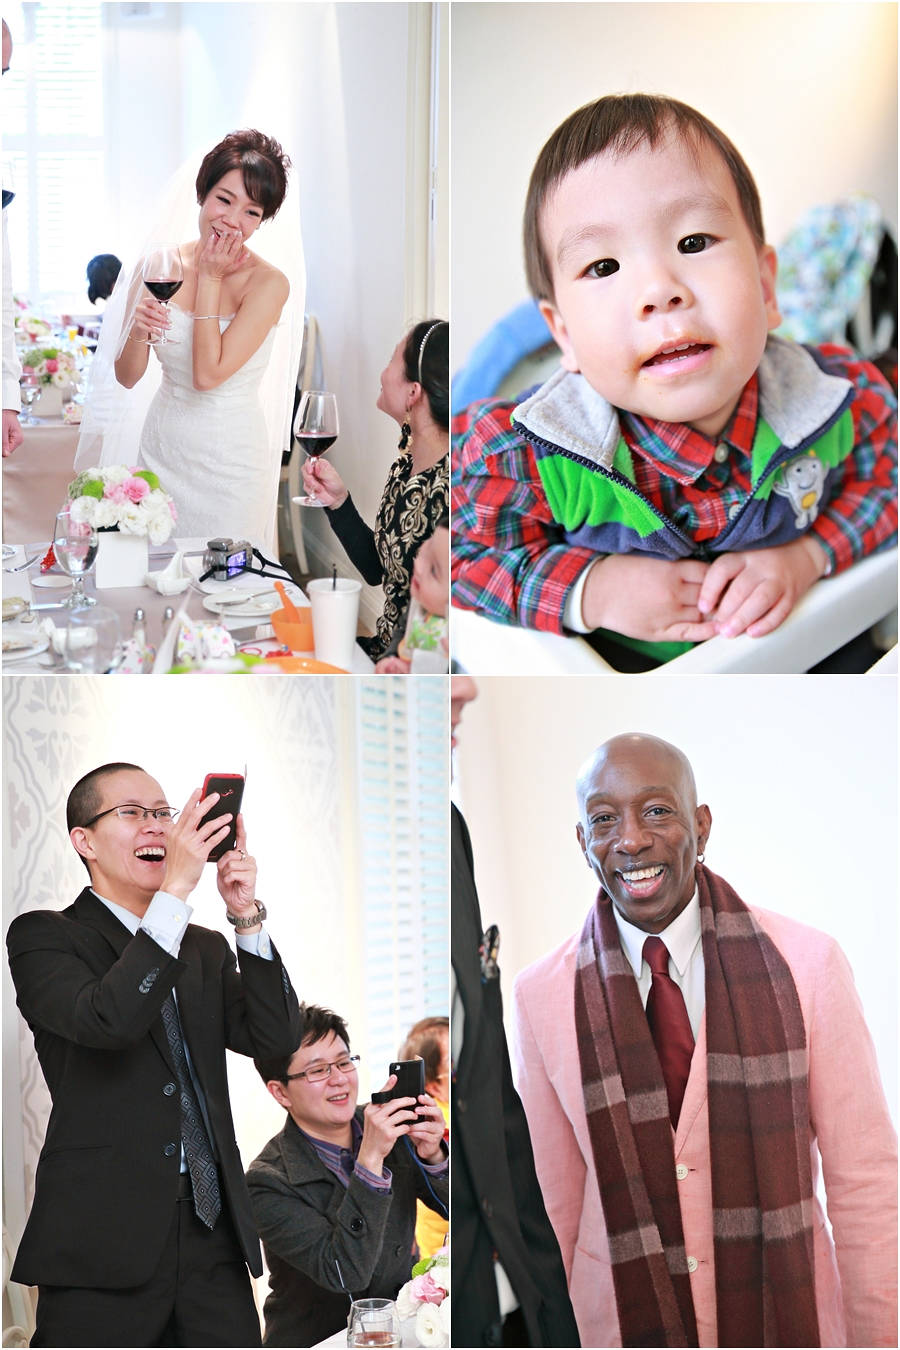 婚攝推薦,婚攝,婚禮記錄,搖滾雙魚,台北Galerie bistro,婚禮攝影